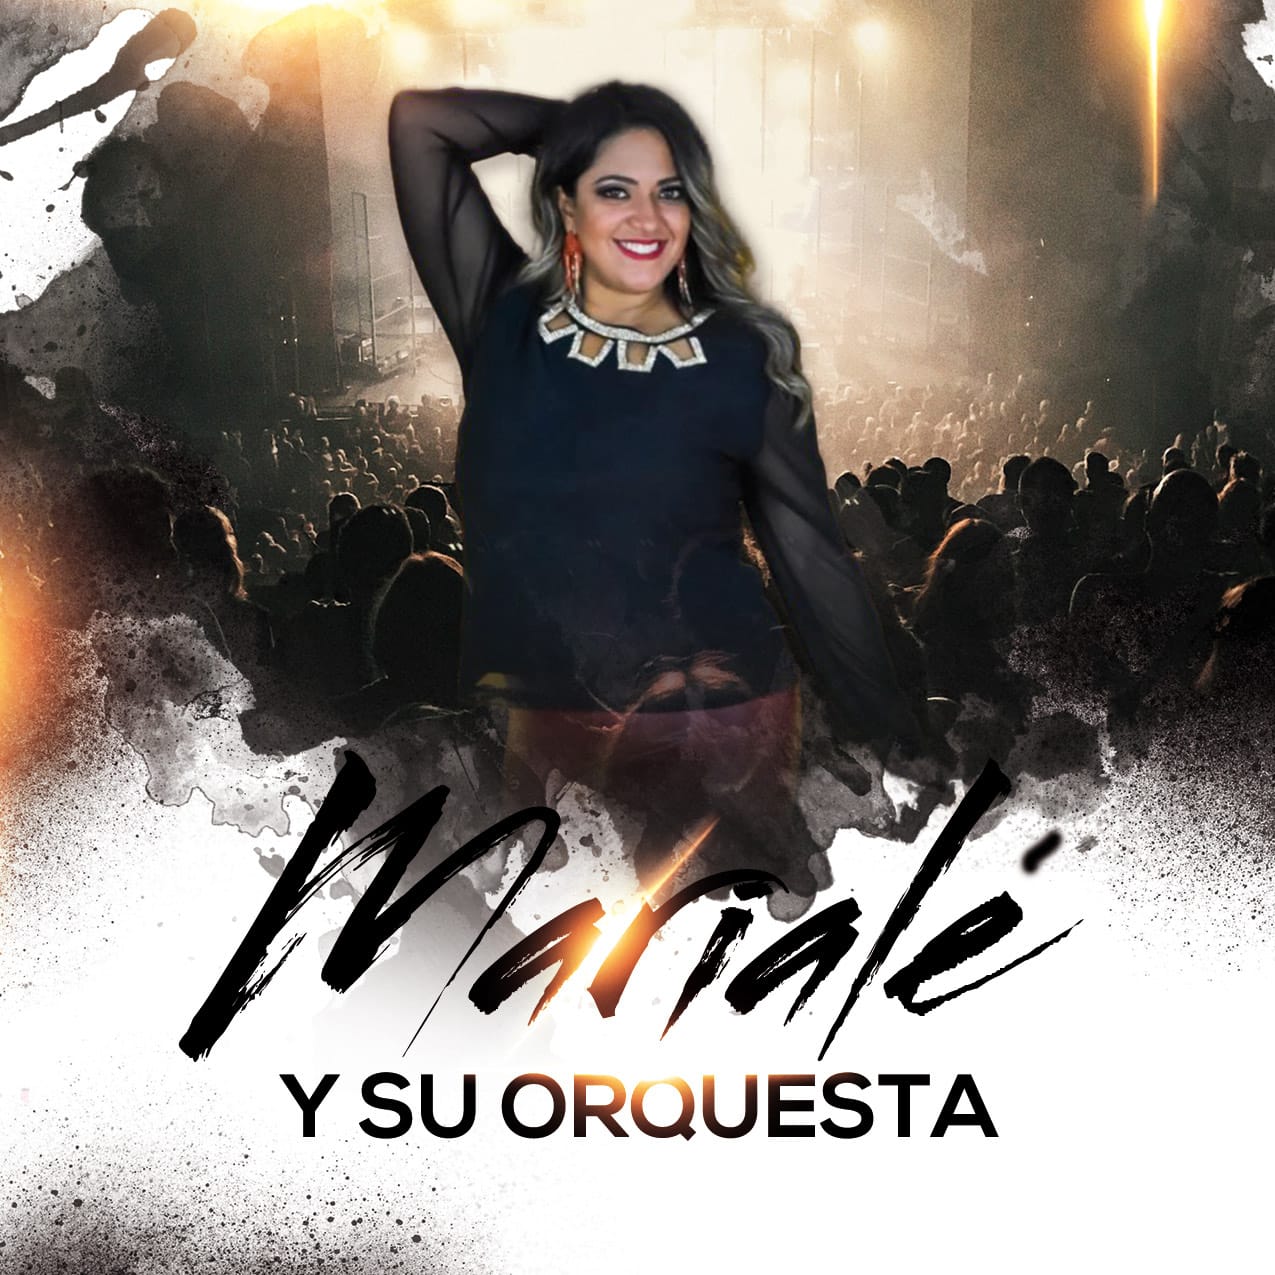 Talento venezolano brilla en Norteamérica y hoy nos presenta su primer álbum “Más de Mi”